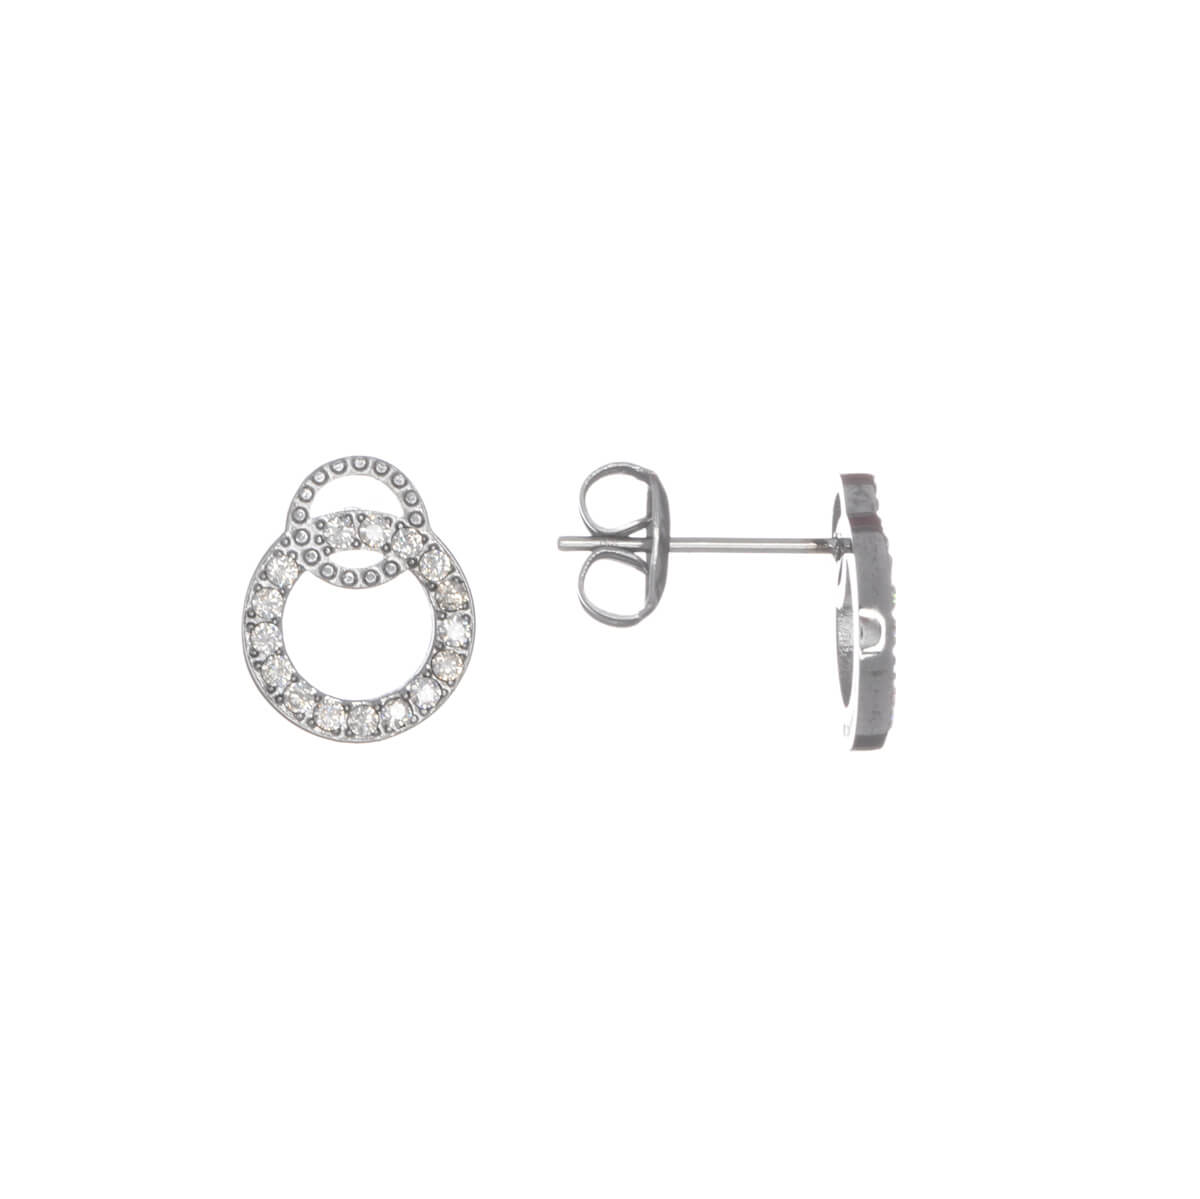 Artificial diamond ring earrings (steel 316L)